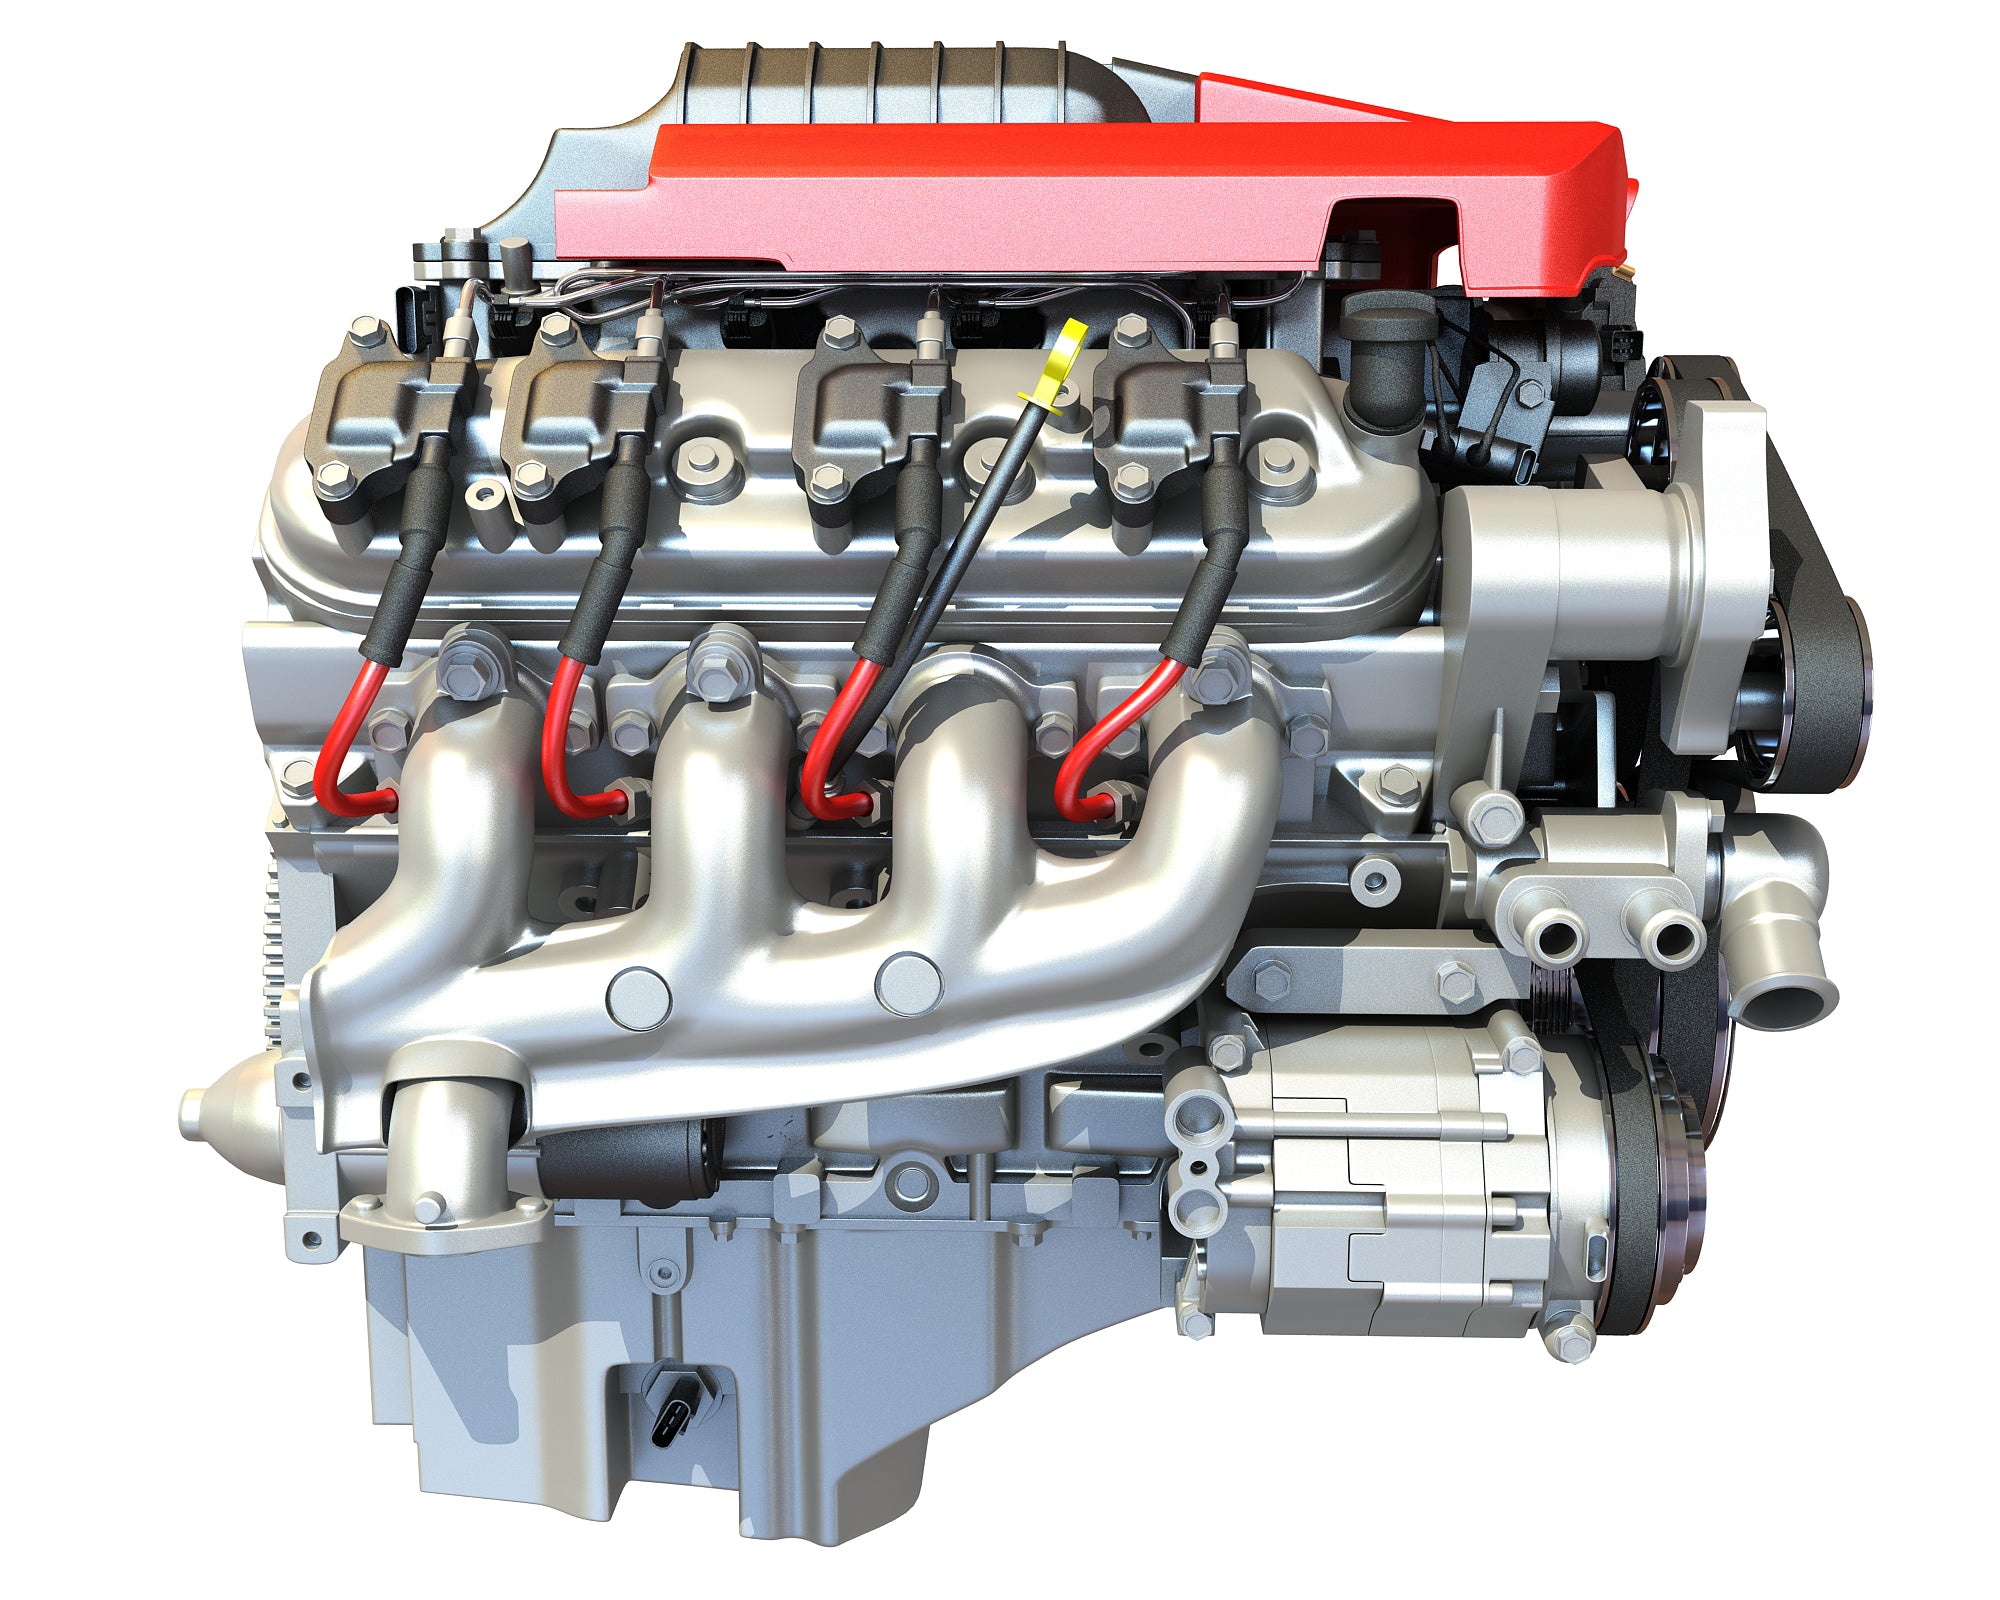 3D Models V8 Supercharged Engine